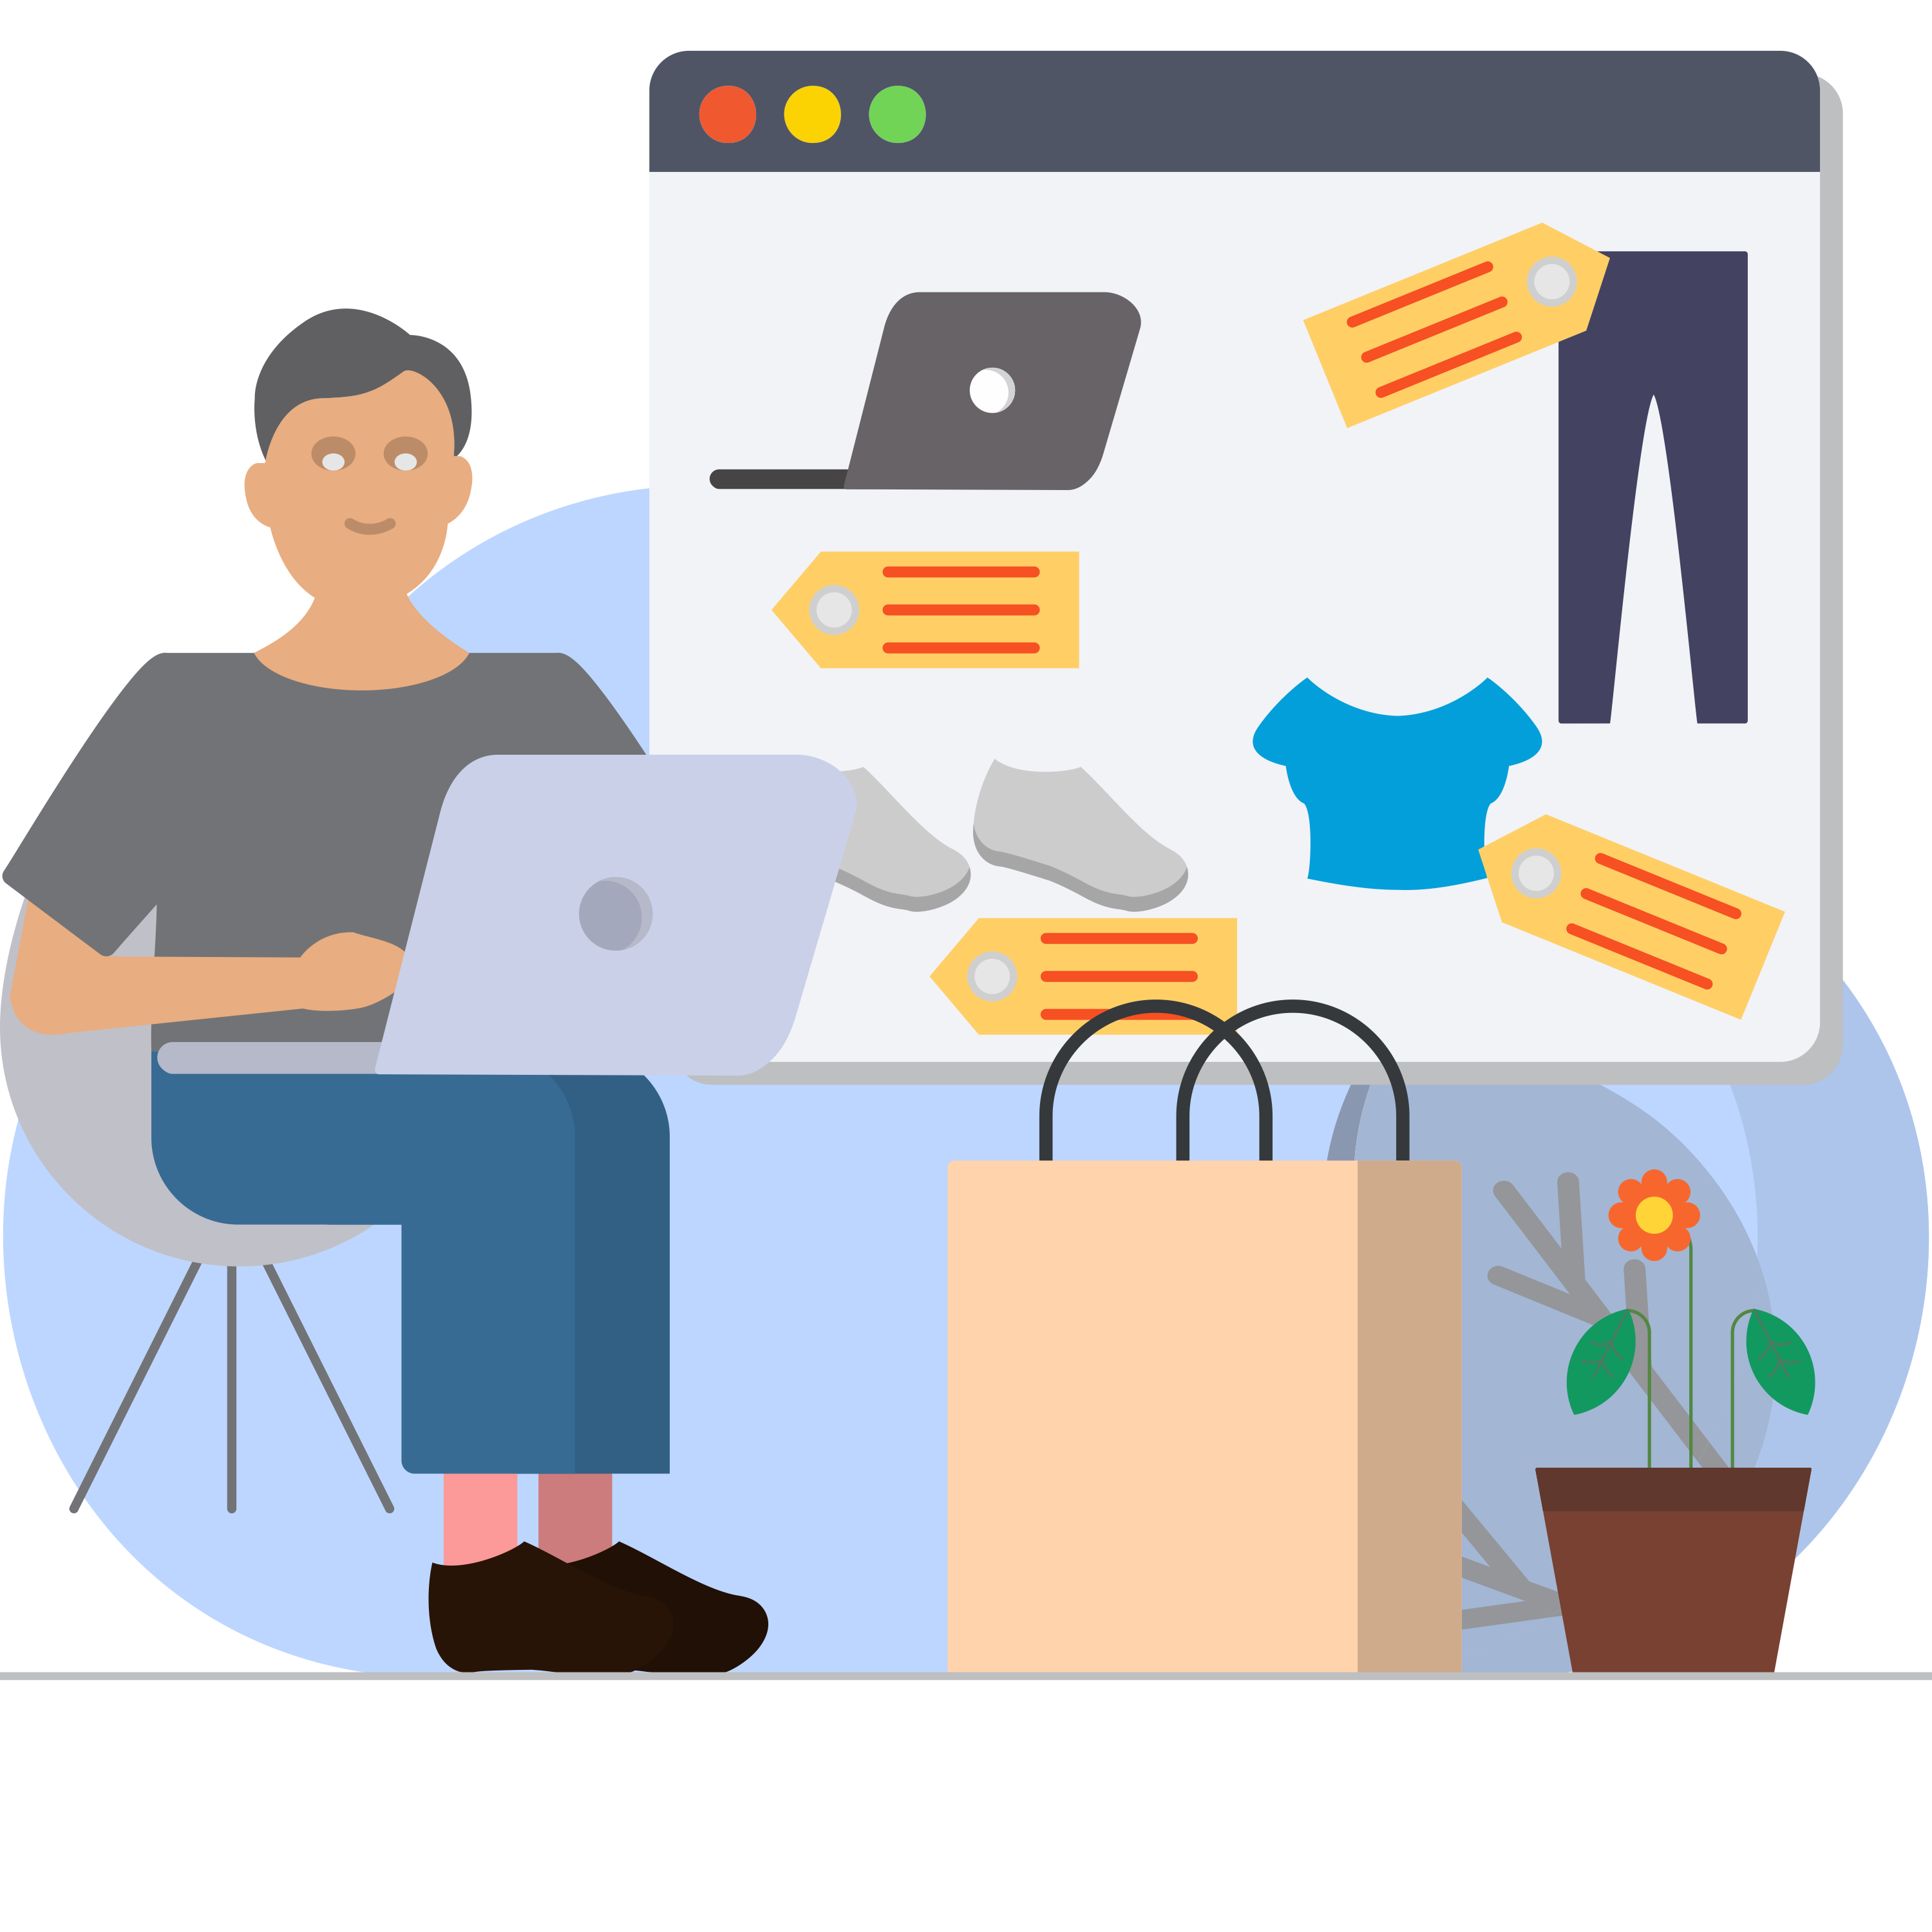 onlineshopping-discount-e-commerce-offer-illustration-illustration